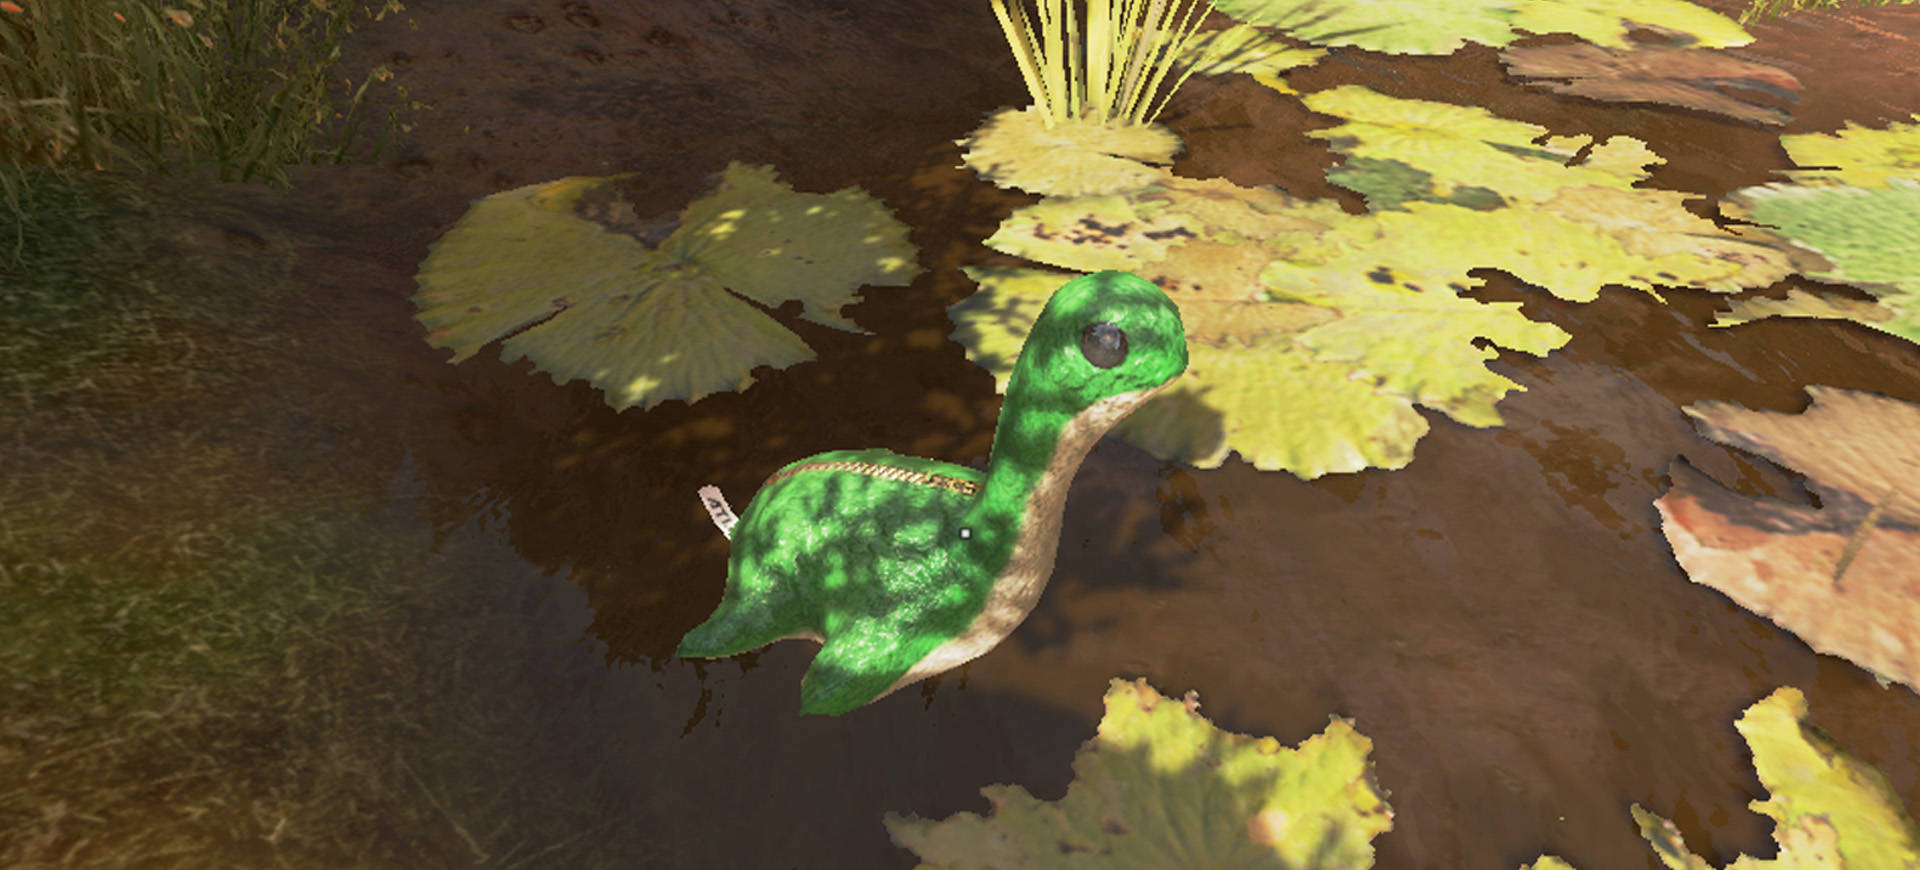 quái vật Loch Ness